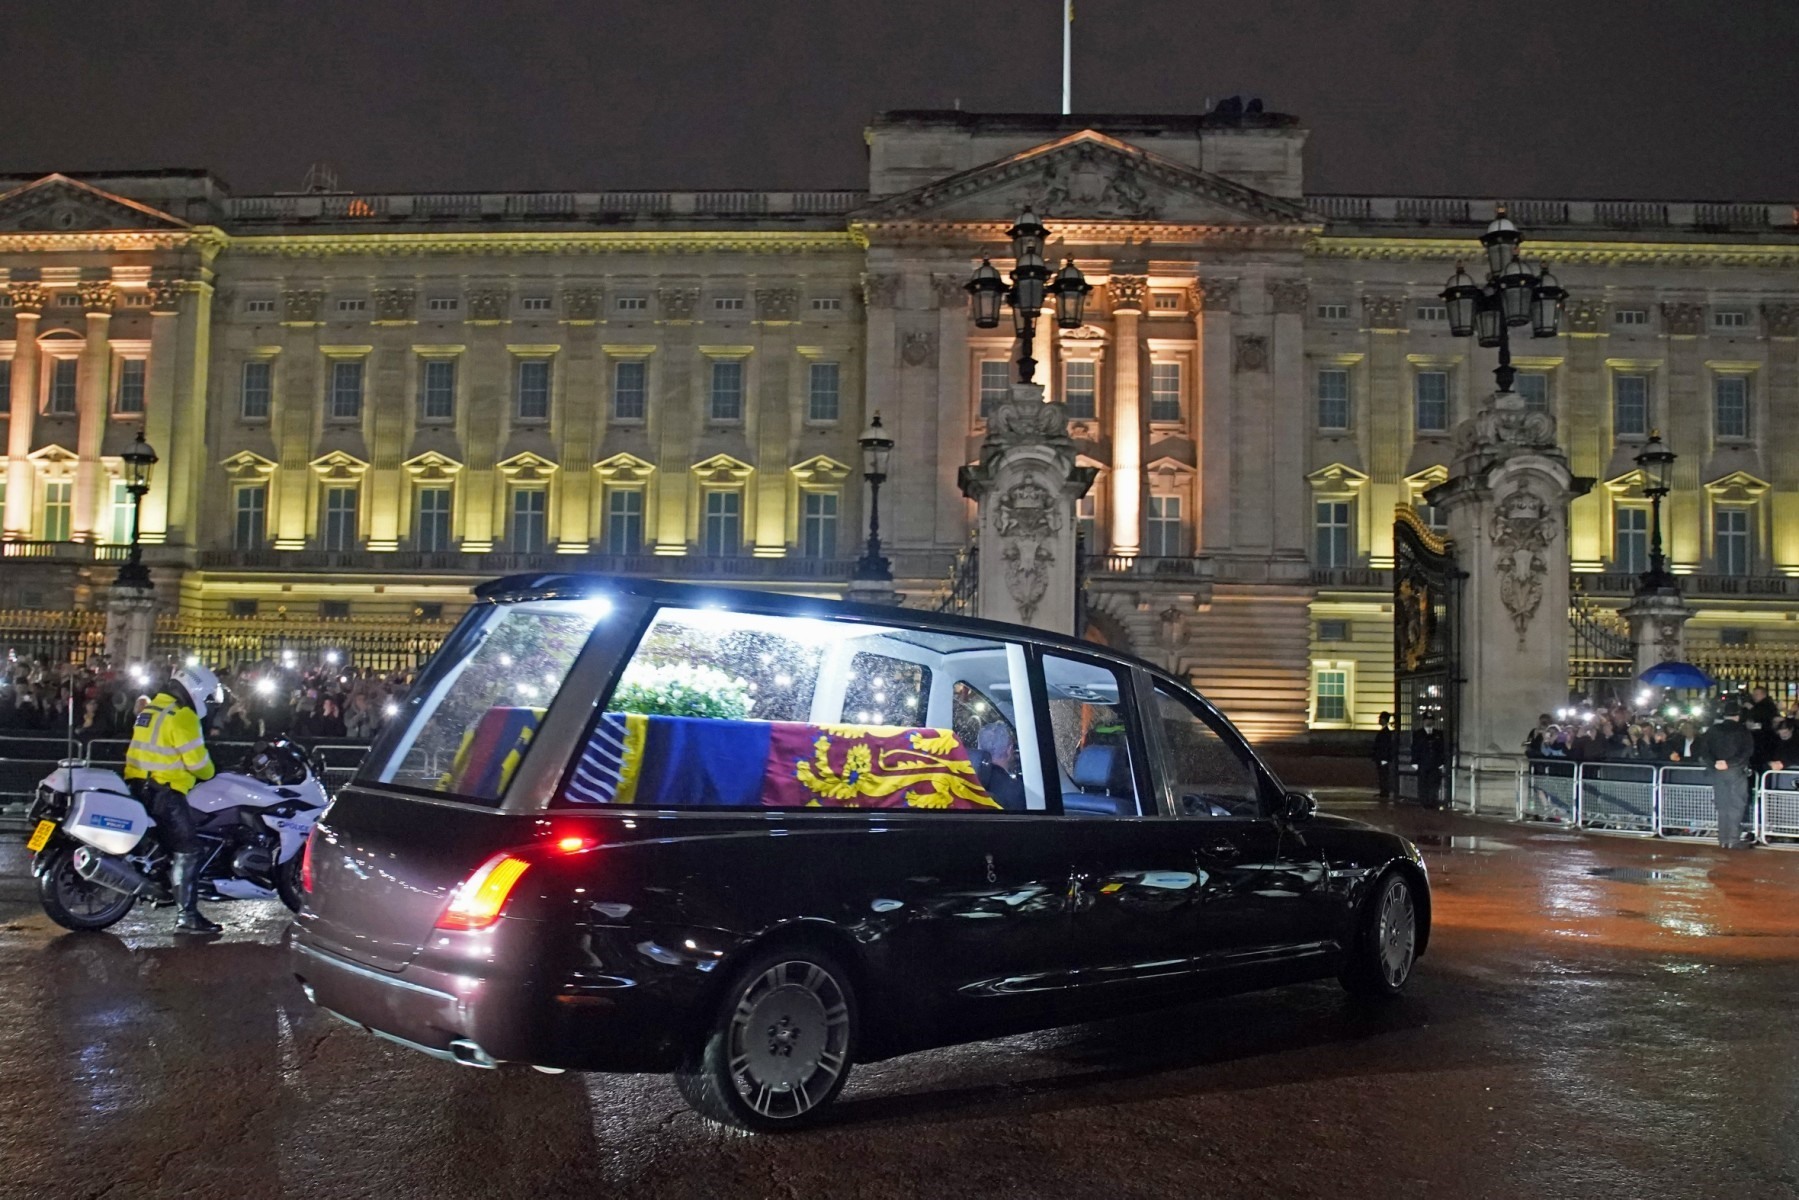 Linh cữu Nữ hoàng Anh được chuyển từ Edinburgh về London. Ảnh: AFP